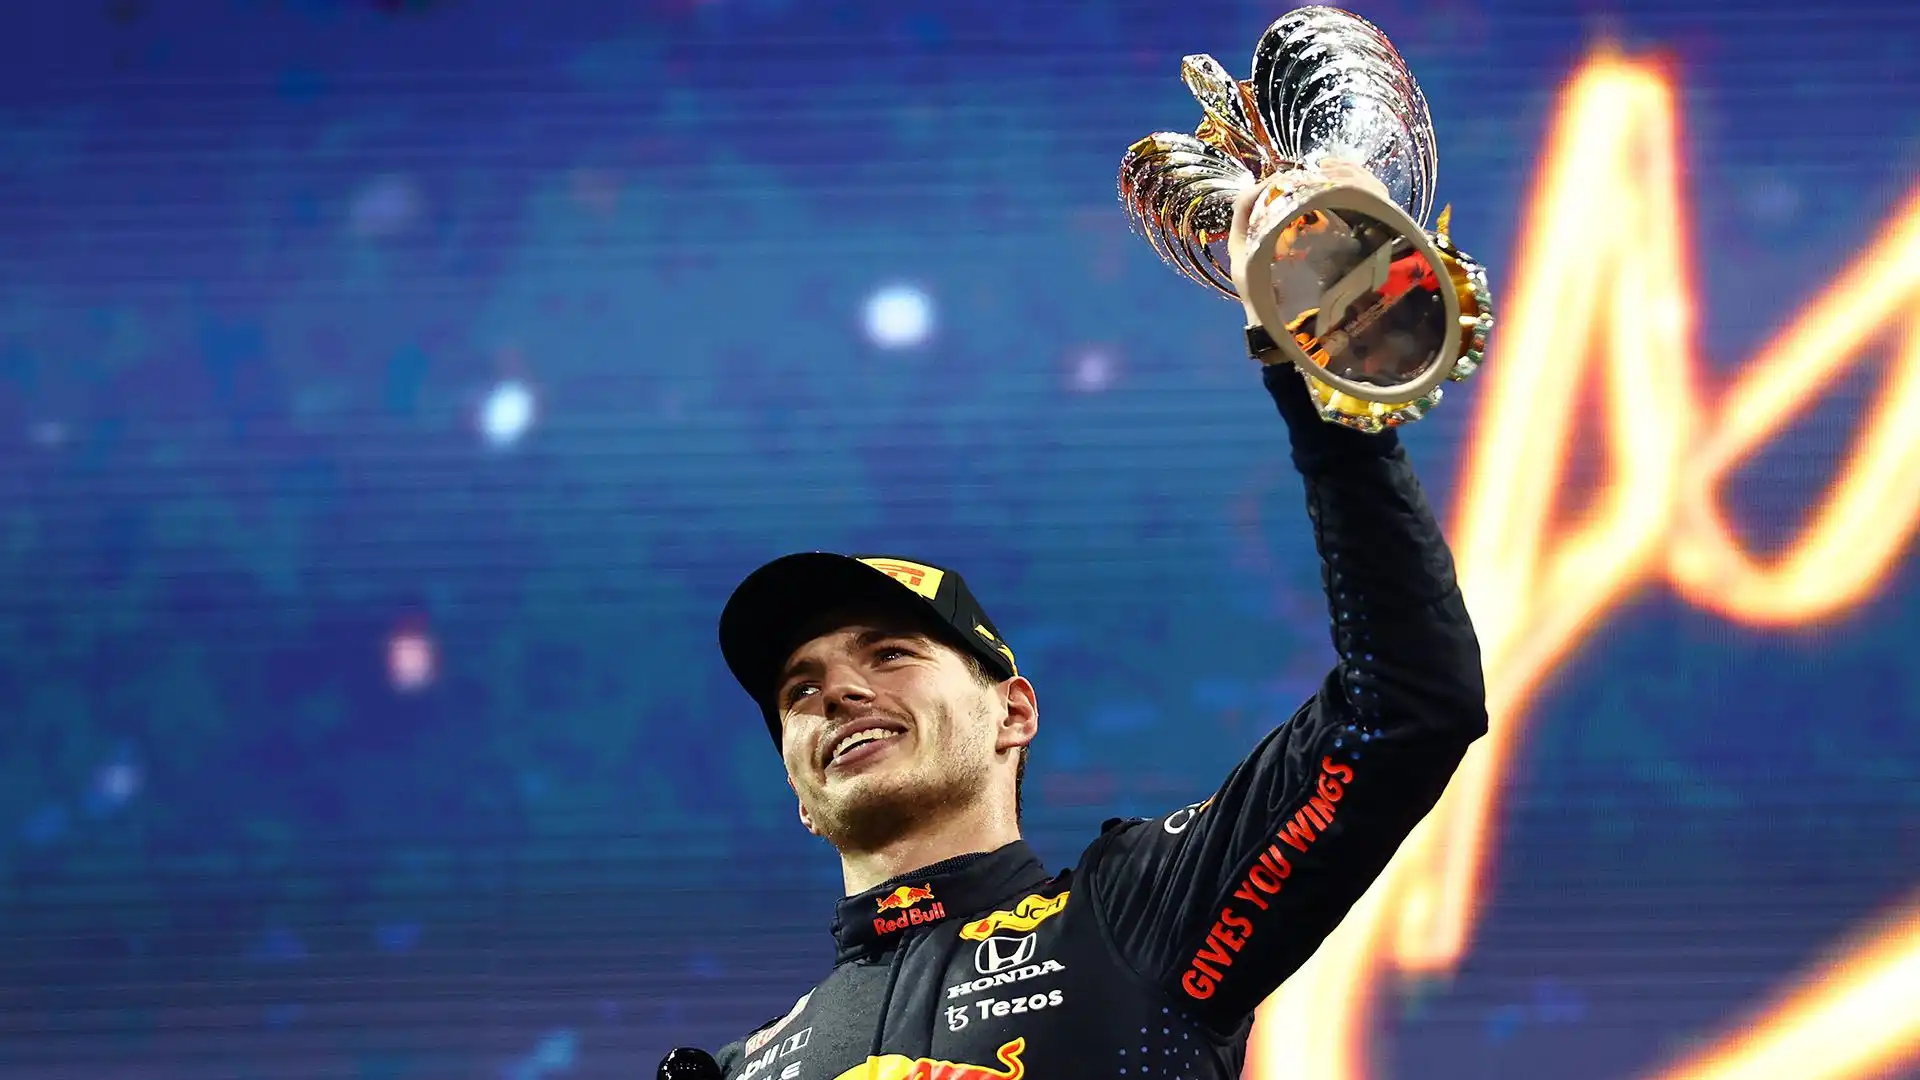 E' diventato il più giovane pilota ad aver vinto una gara del campionato del mondo di Formula 1 a soli 18 anni, 7 mesi e 15 giorni